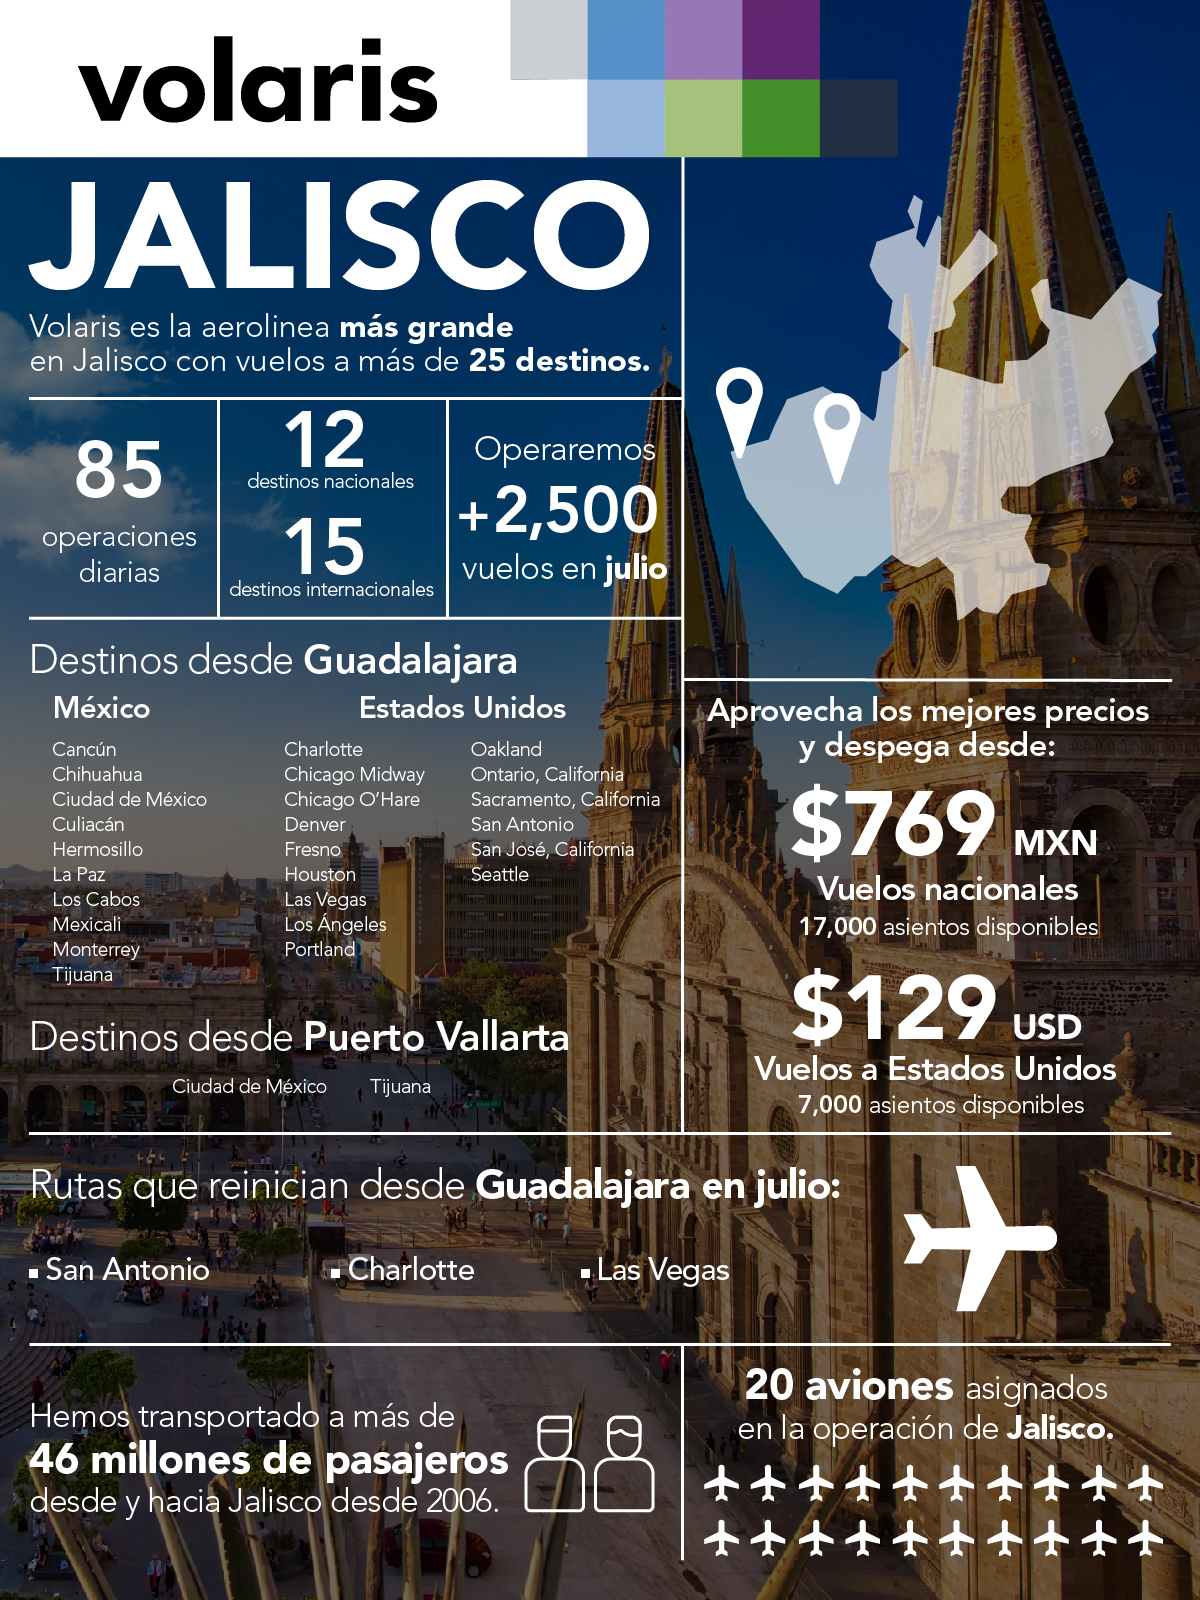 Operará Volaris 1,000 vuelos desde Jalisco | Aviación 21